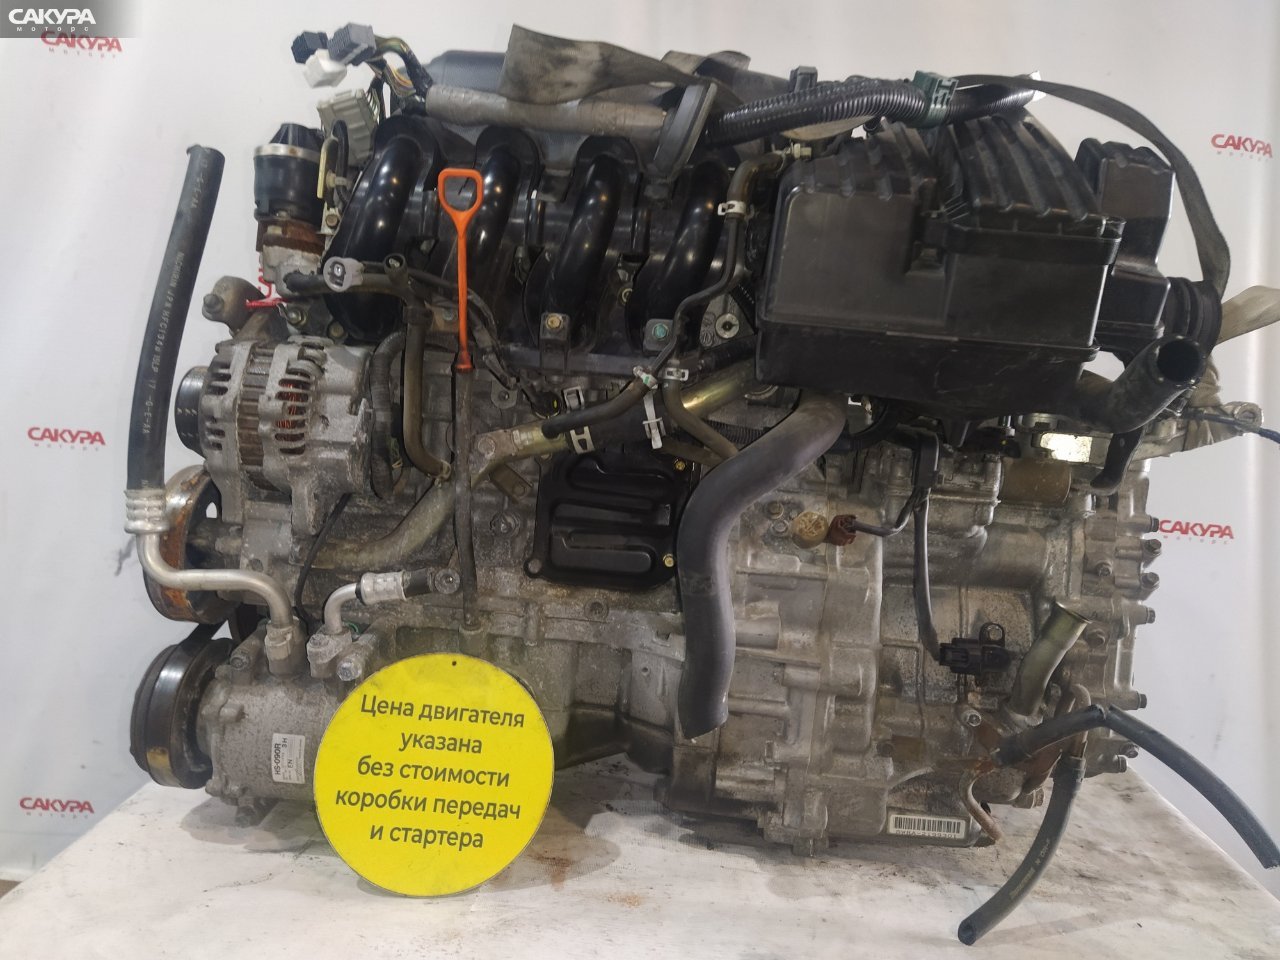 Двигатель Honda FIT GD1 L13A: купить в Сакура Красноярск.